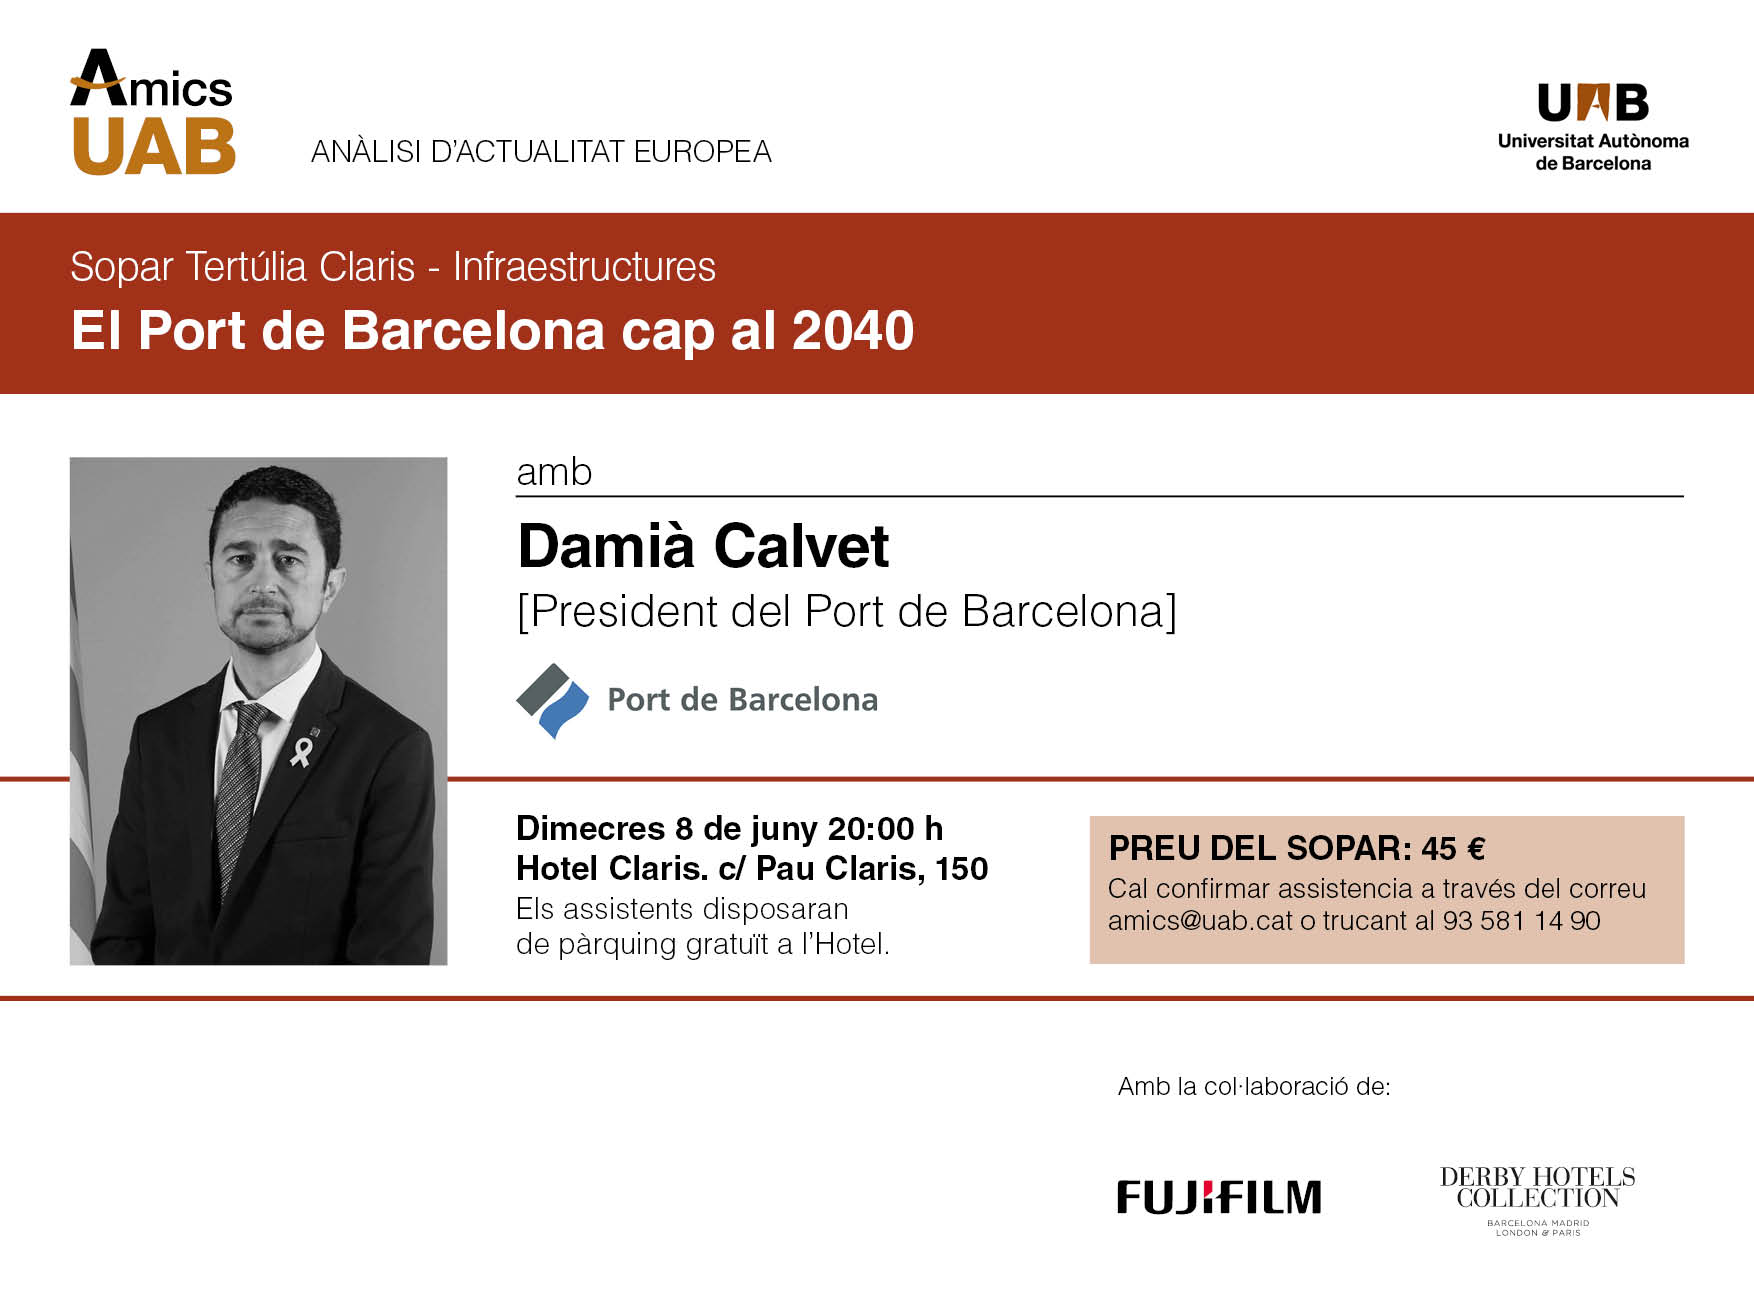 El port de Barcelona cap al 2040